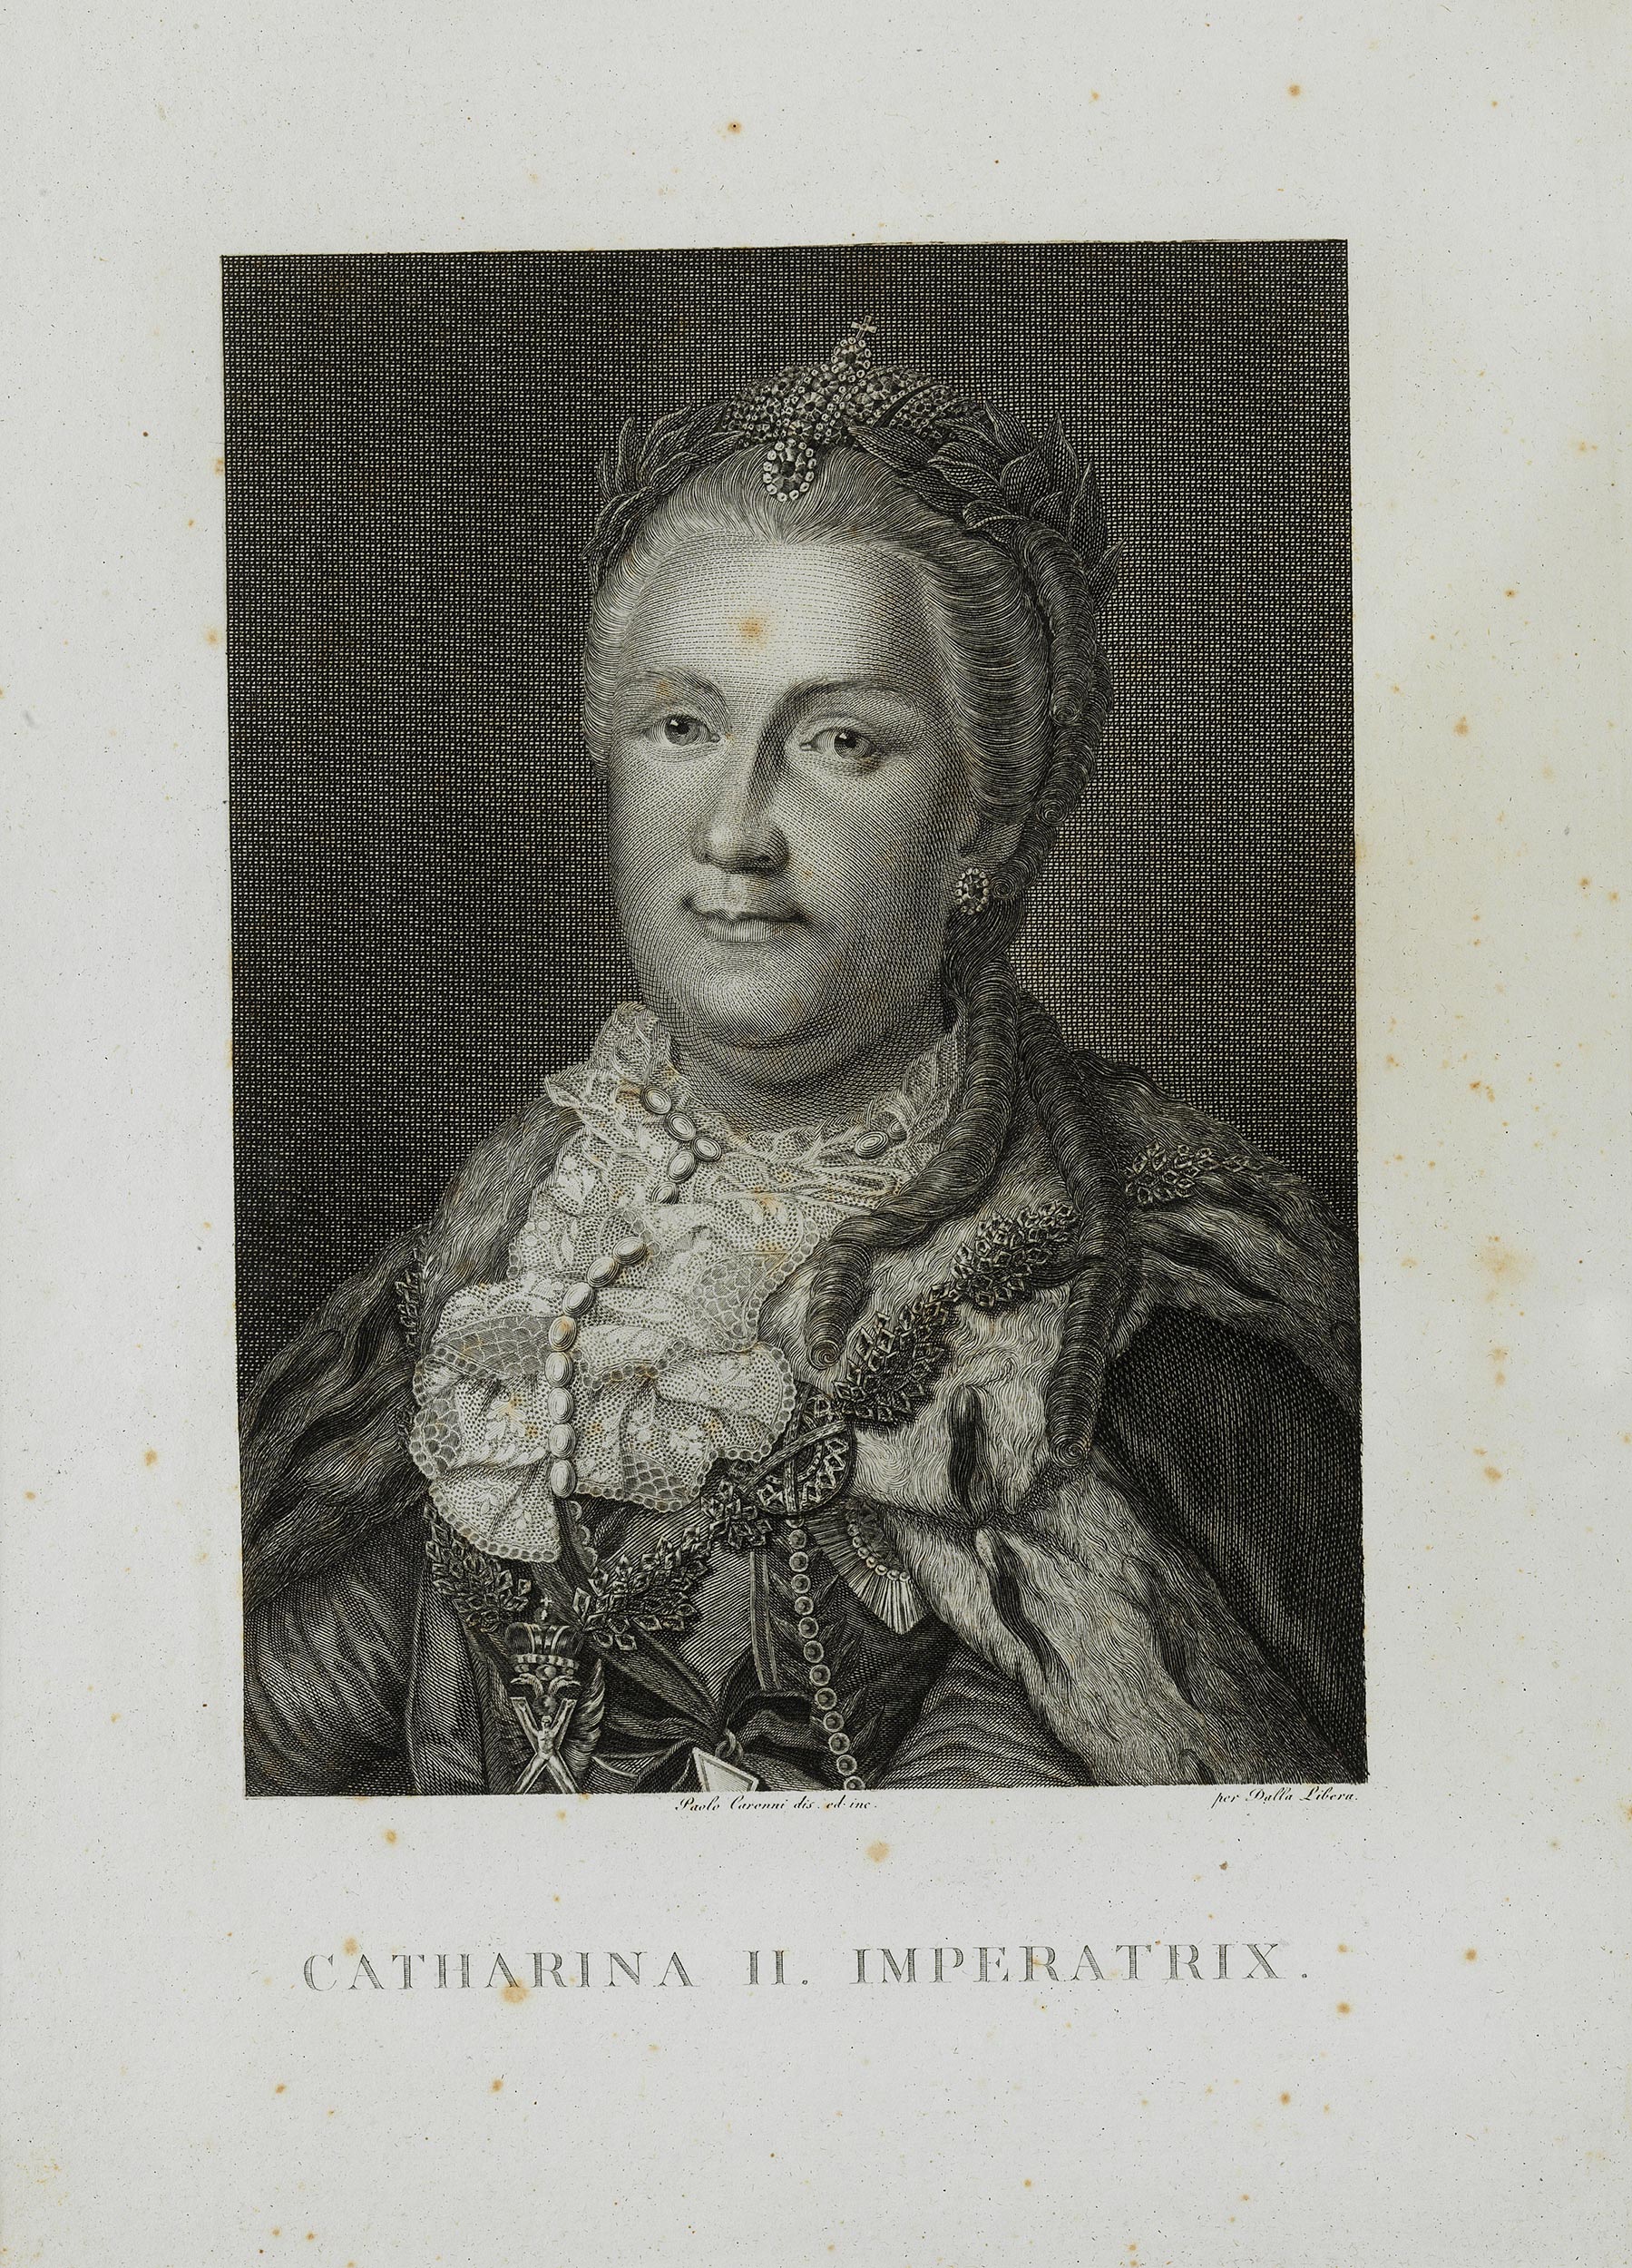 Portrait der Zarin Katharina der Großen